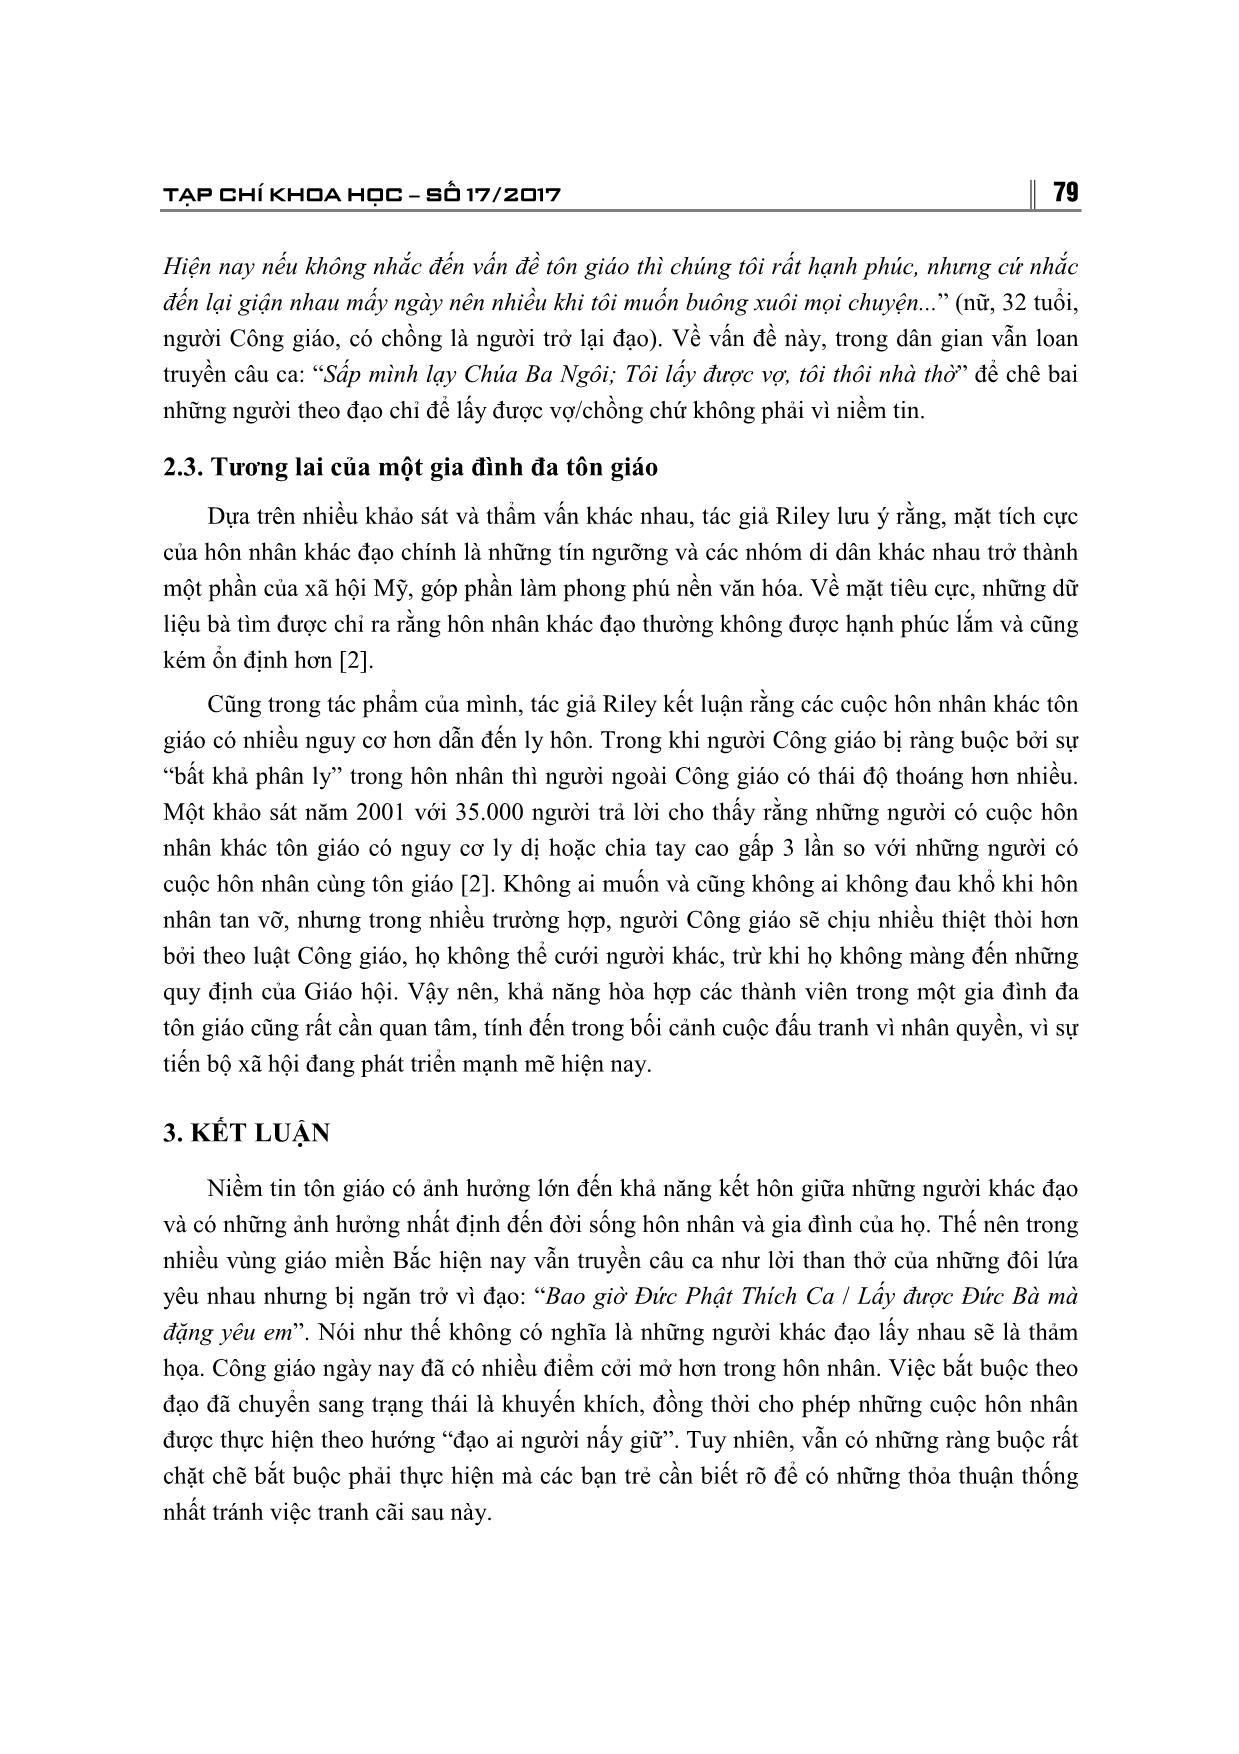 Những thách thức đối với cuộc hôn nhân khác tôn giáo ở Việt Nam hiện nay trang 7